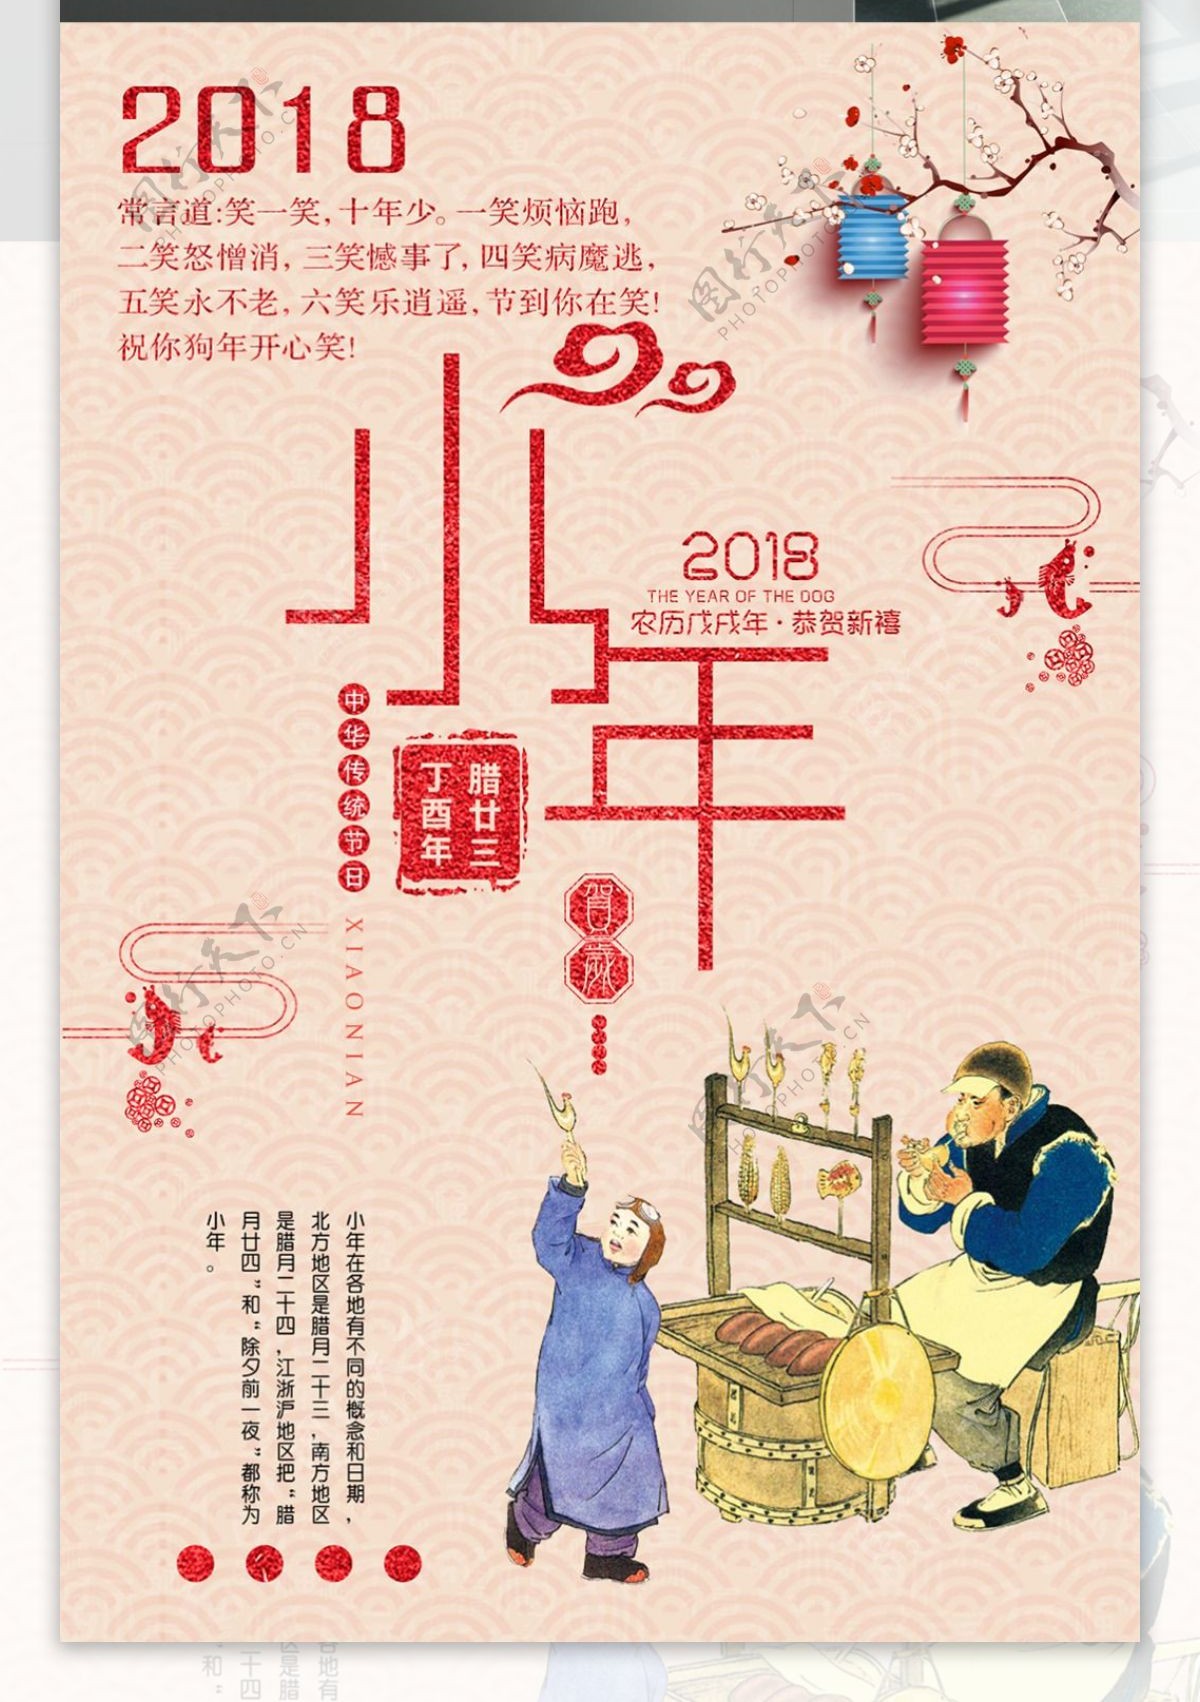 中国风小年宣传海报